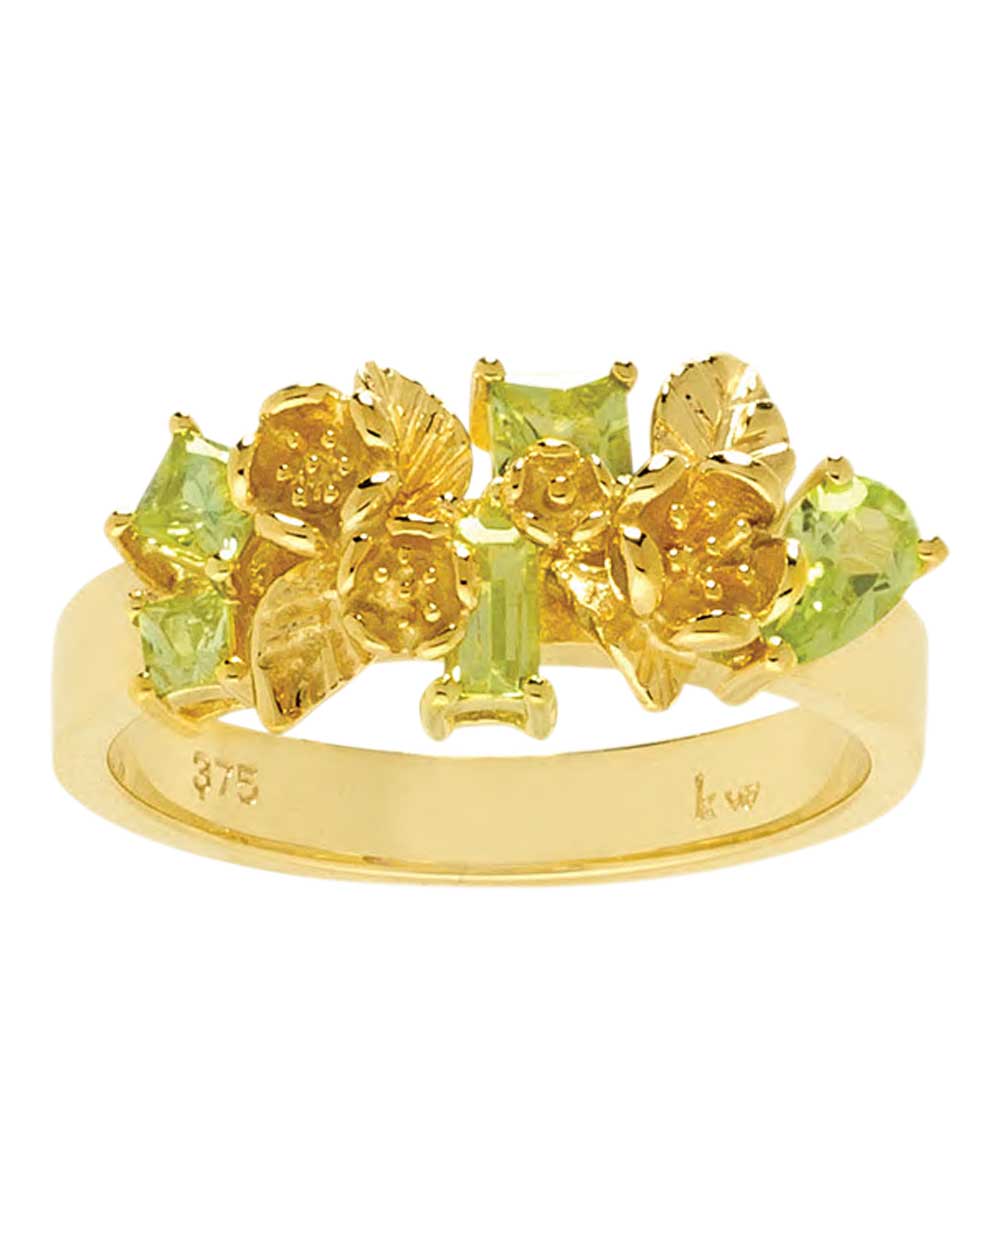 Karen Walker Jewellery ring, $1079